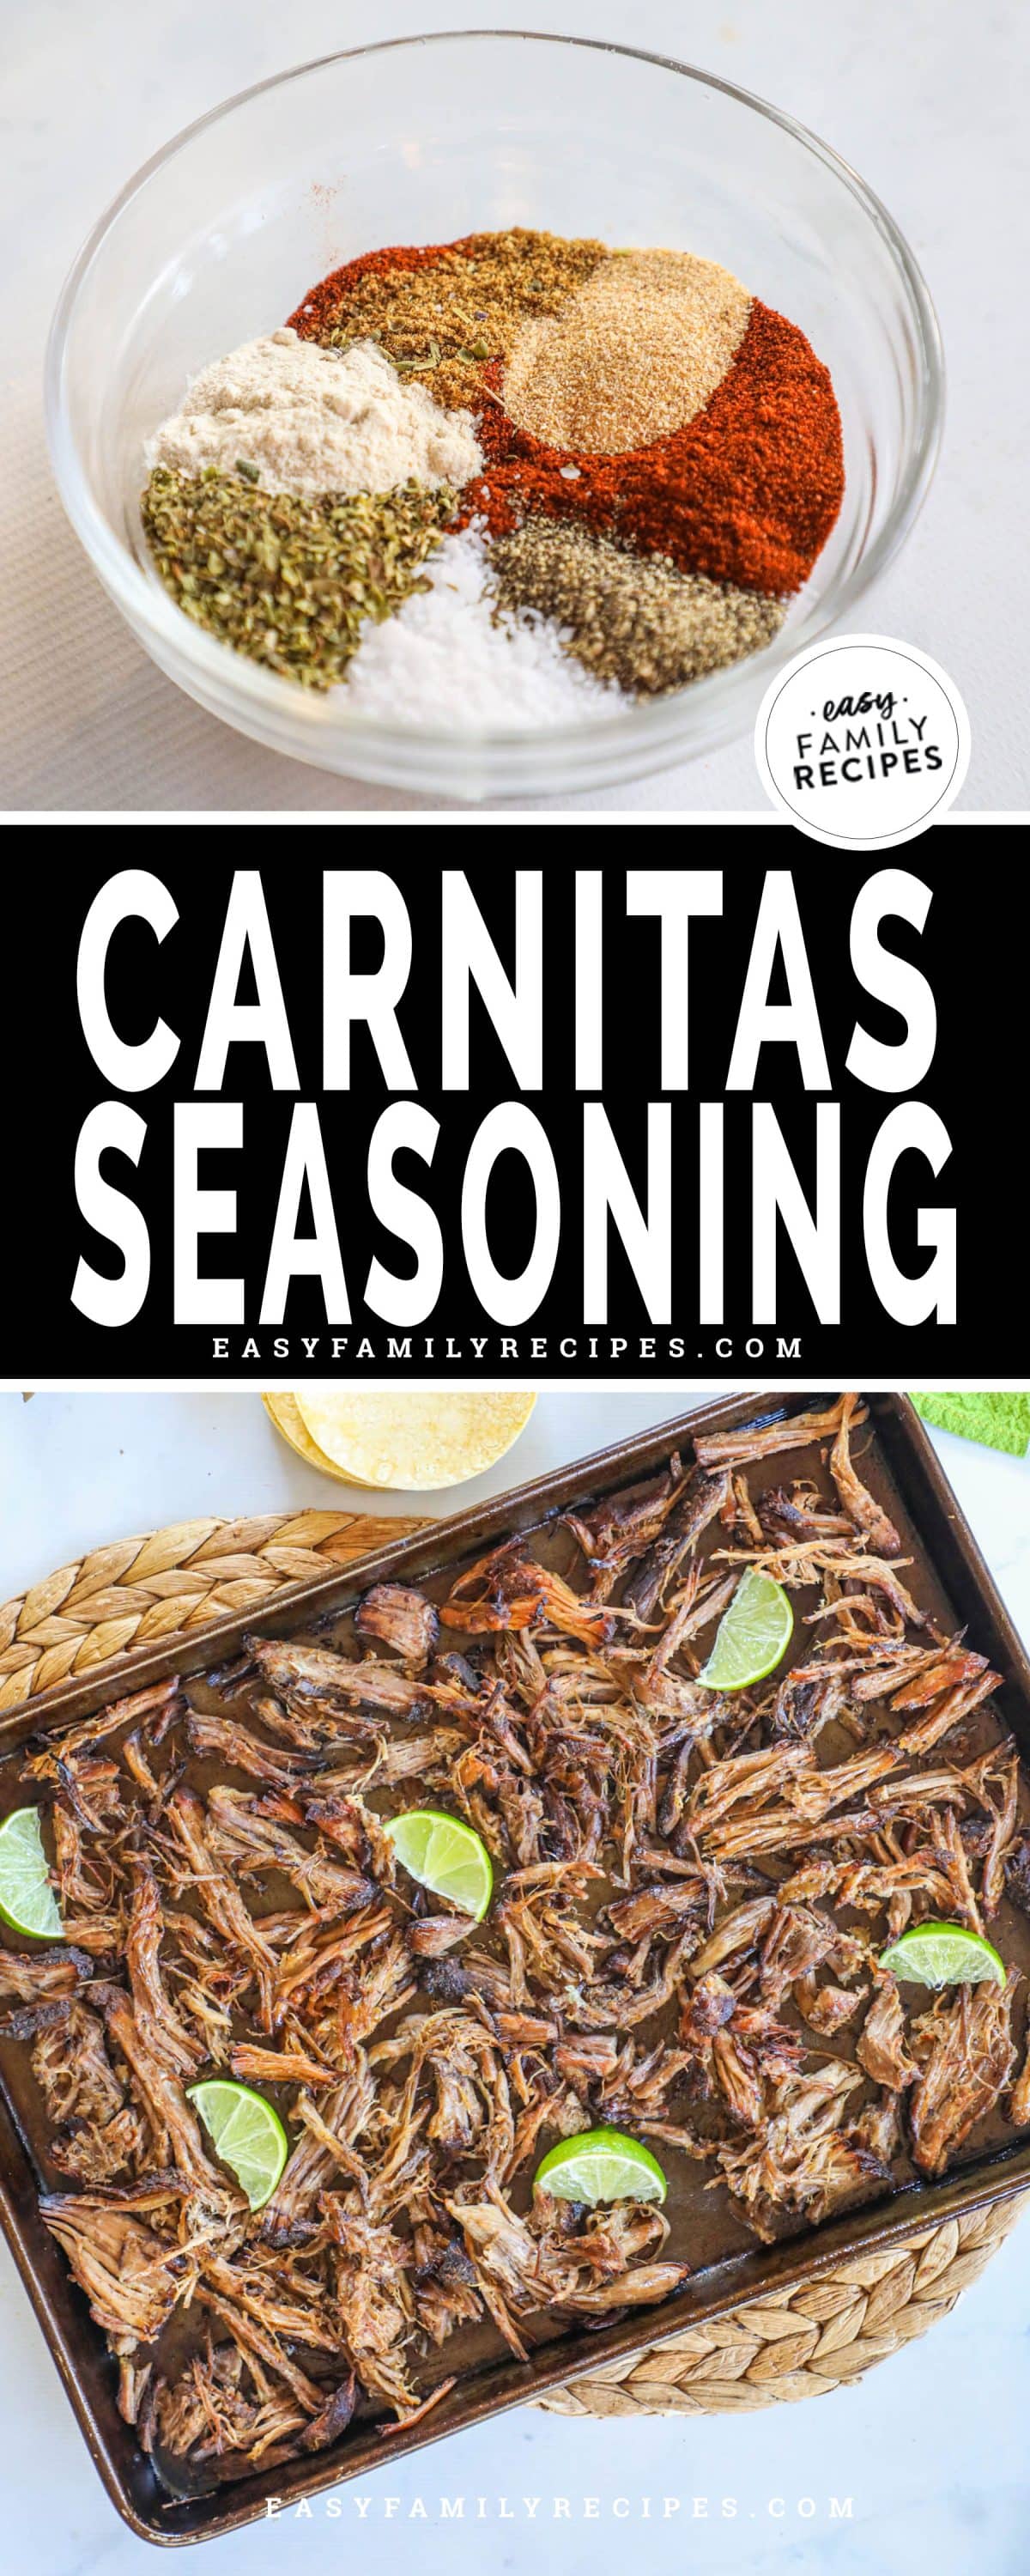 Homemade Carnitas seasoning mix on pork carnitas